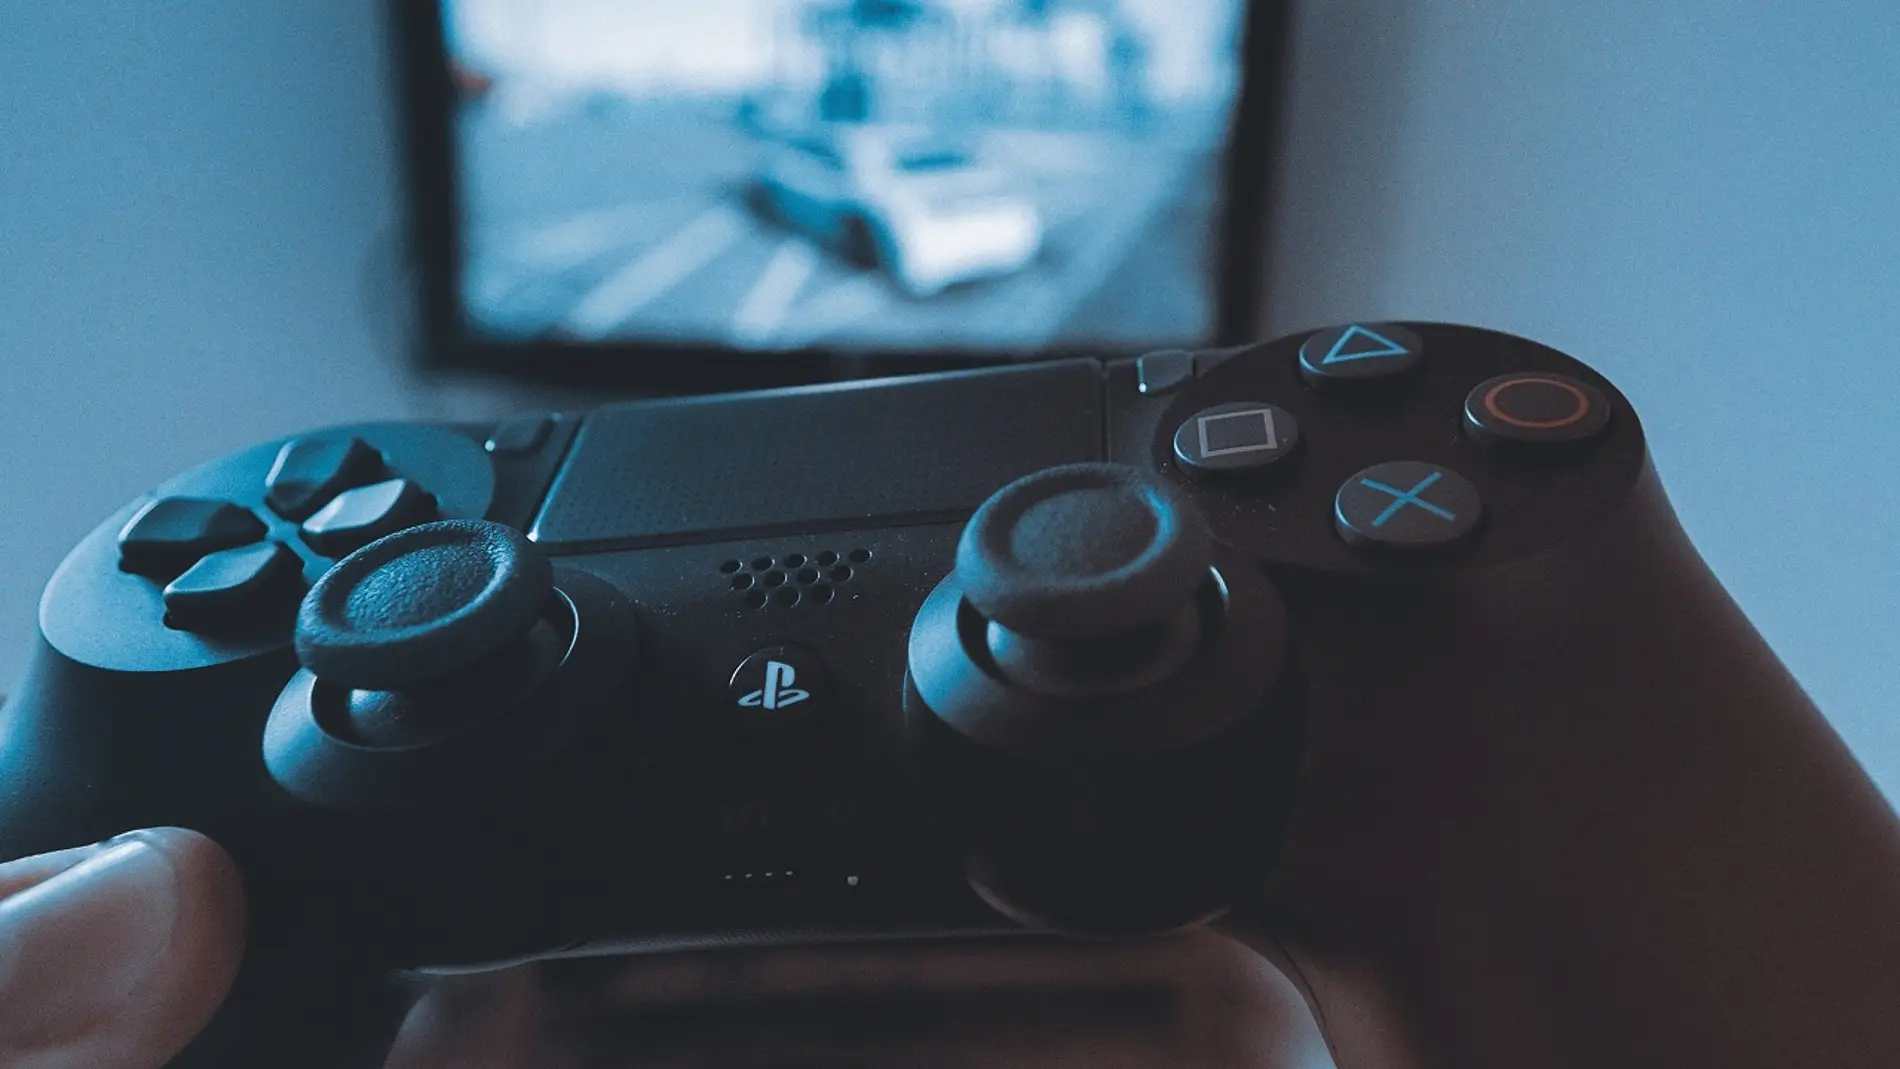 Juegos de PS4 – Juegos nuevos y por venir en PS4